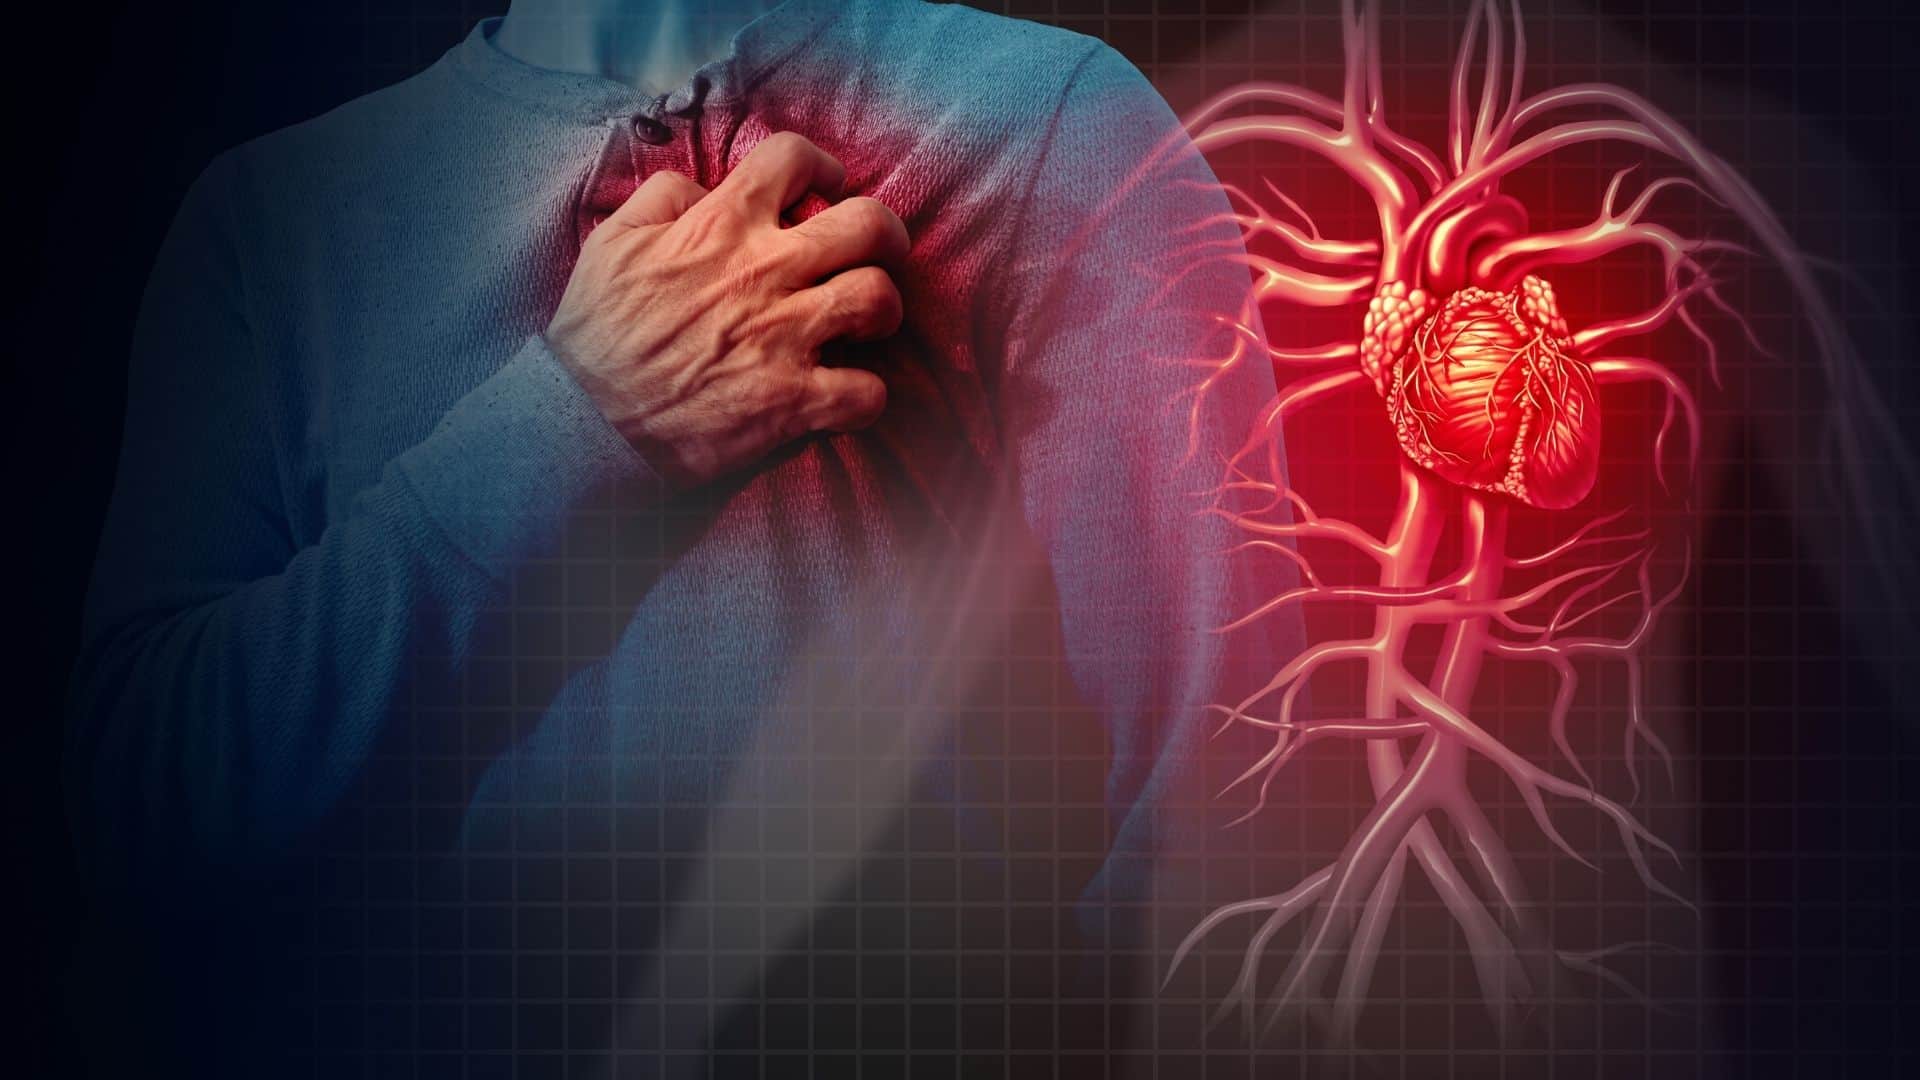 Dor no pescoço pode ser sinal de infarto